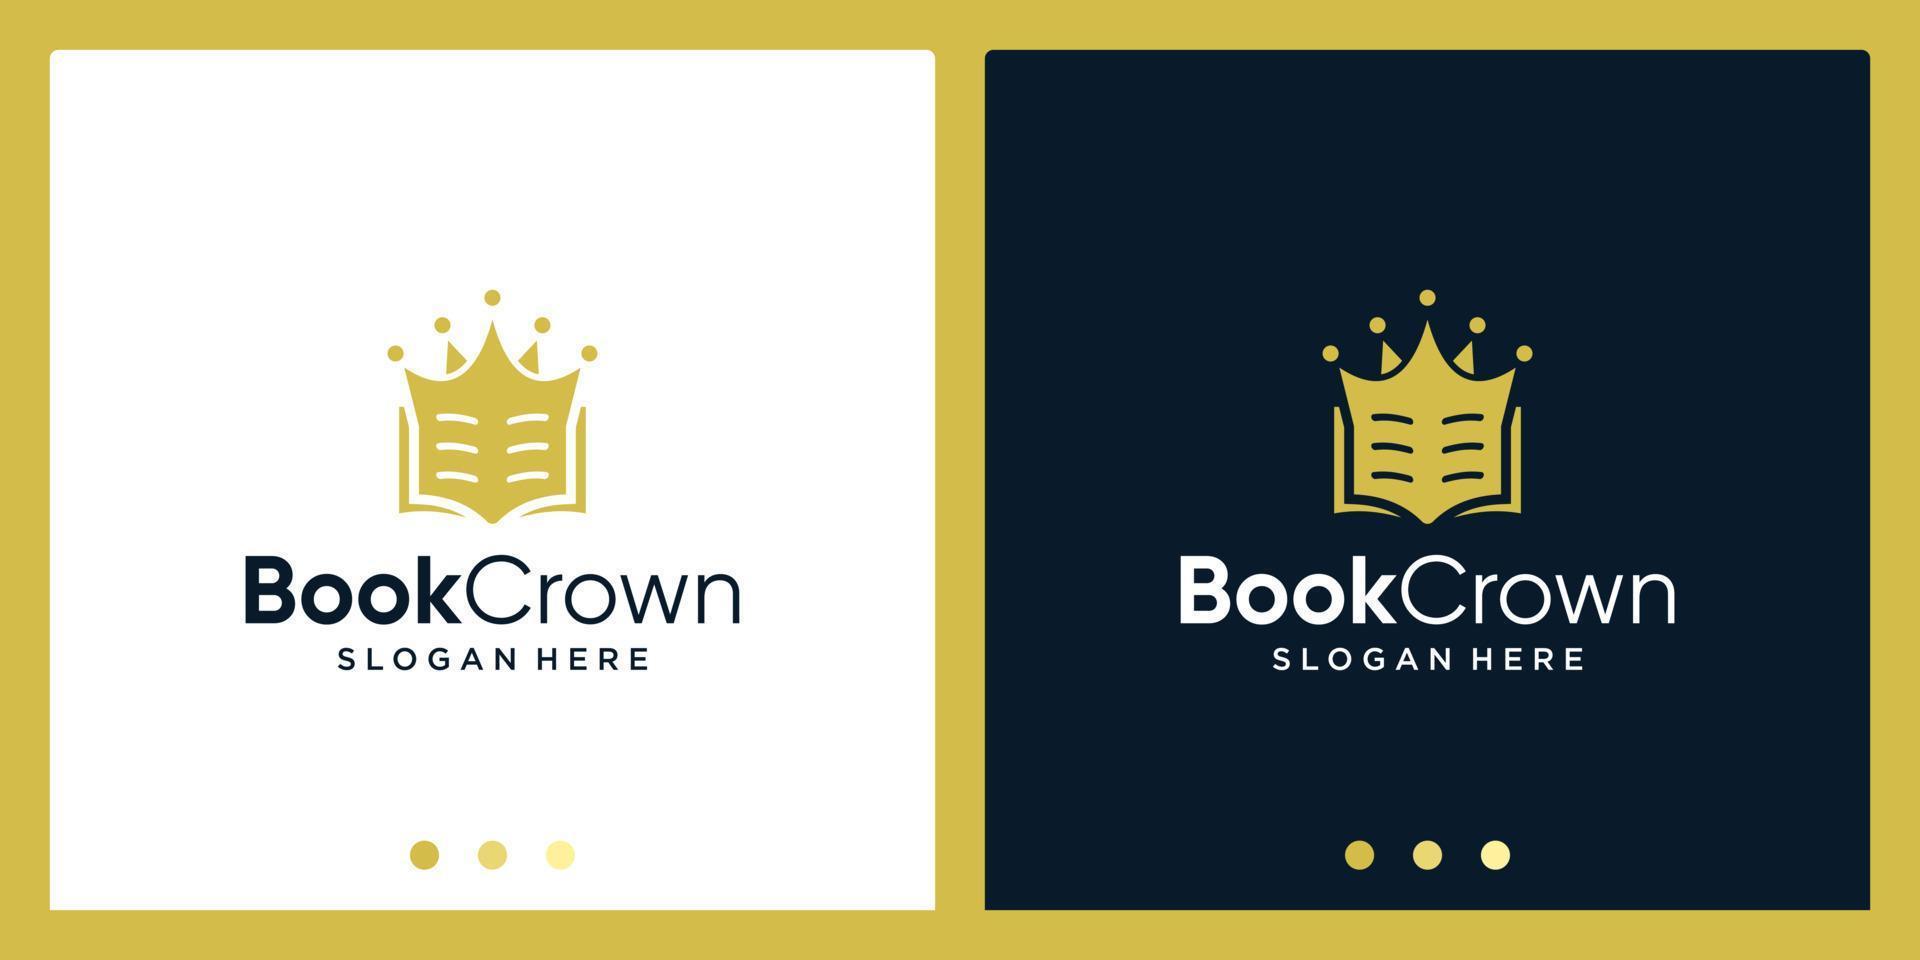 Open book logo design inspiration with crown design logo. Premium Vector